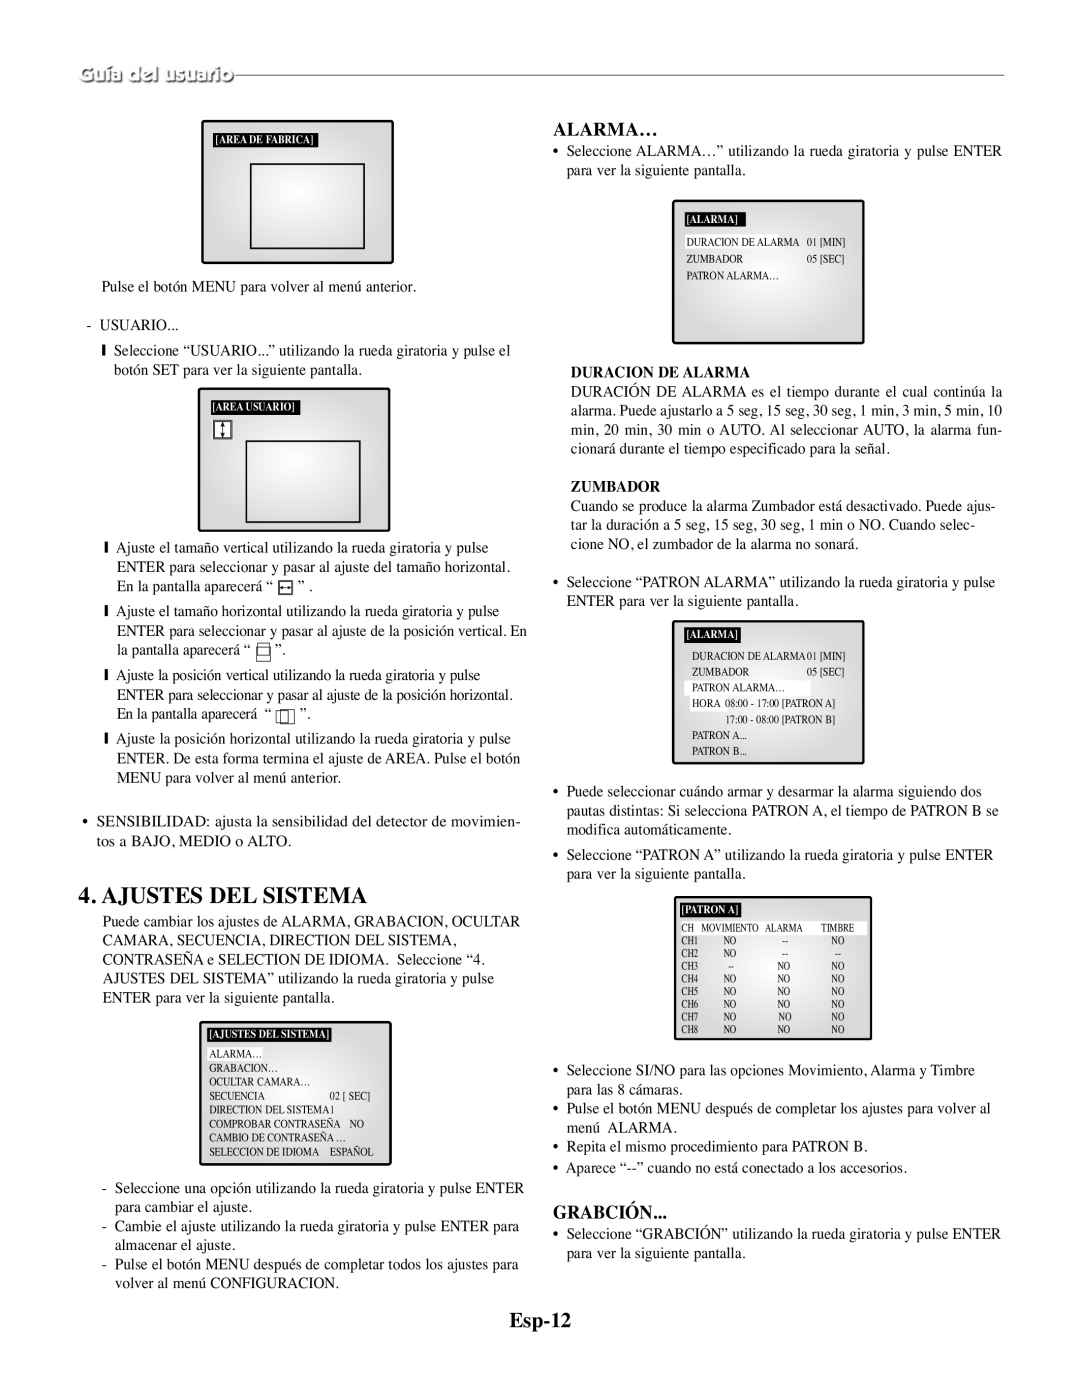 Samsung SMO-210MP/UMG, SMO-210TRP manual Ajustes Del Sistema, Esp-12, Alarma…, Grabción, Duracion De Alarma, Zumbador 